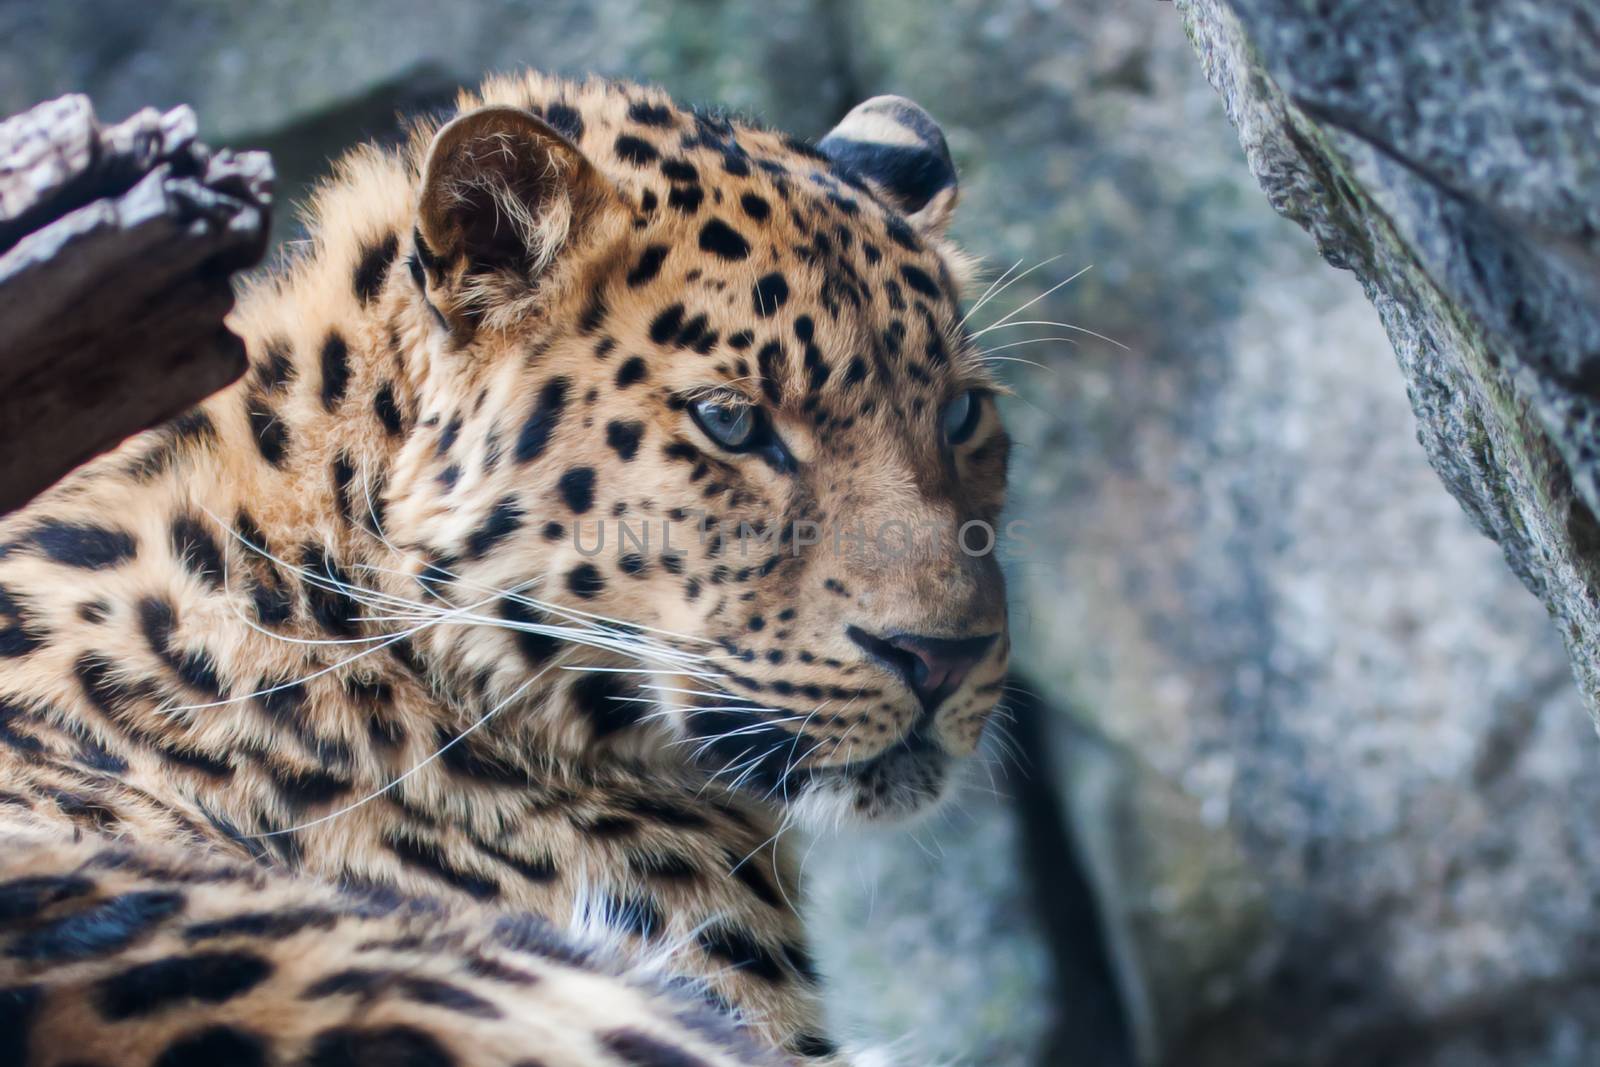 Amur Leopard resting on rock by Coffee999